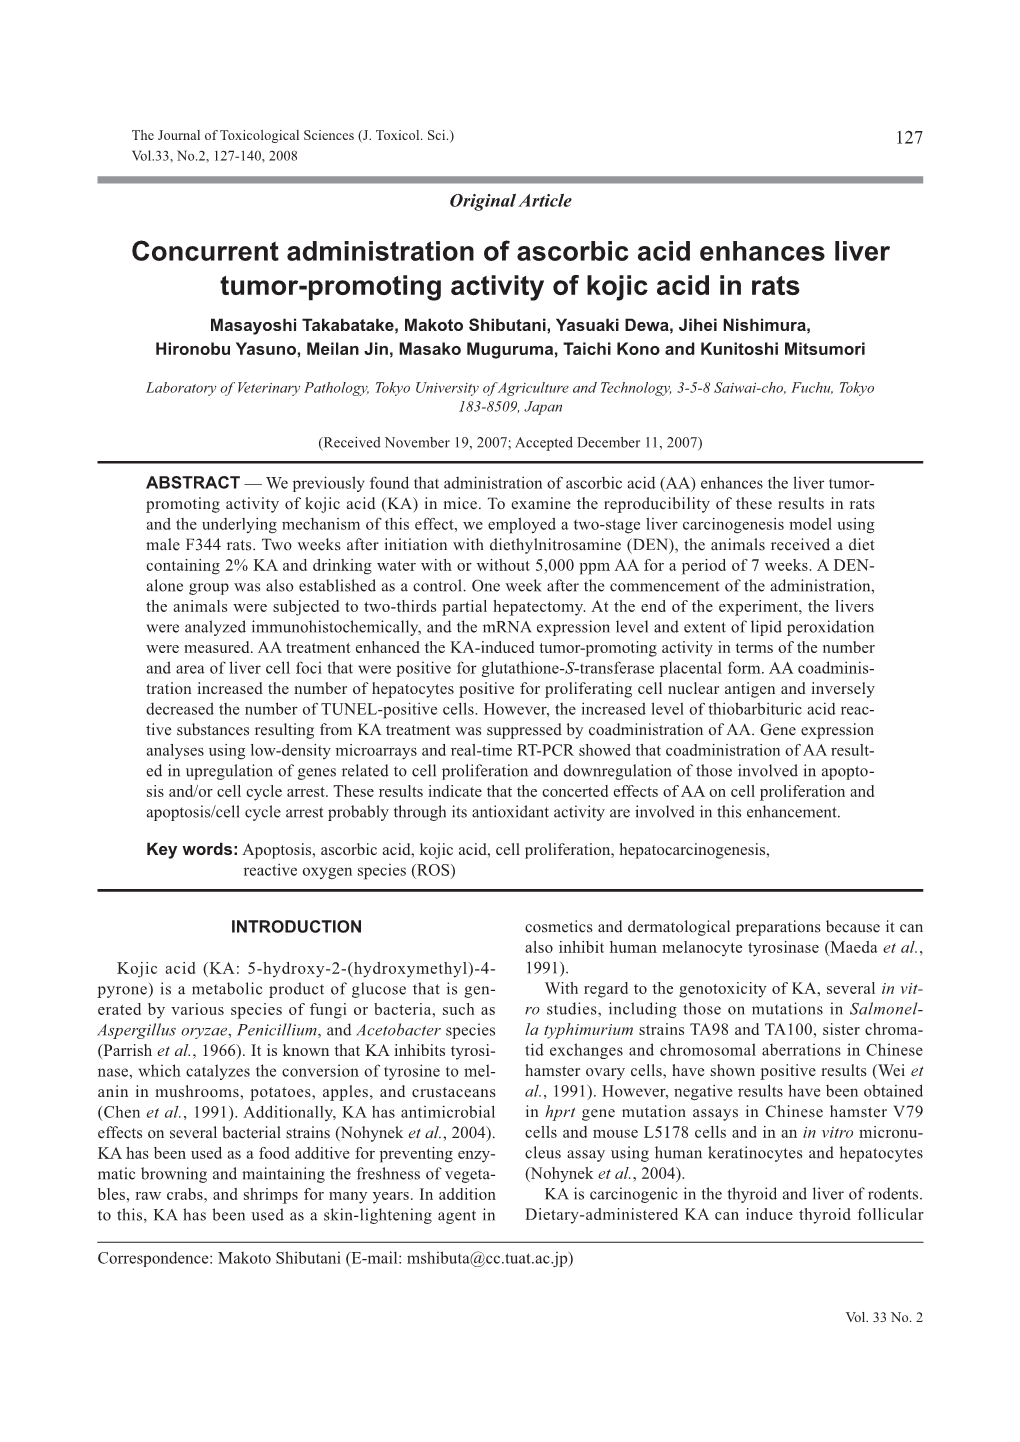 Concurrent Administration of Ascorbic Acid Enhances Liver Tumor